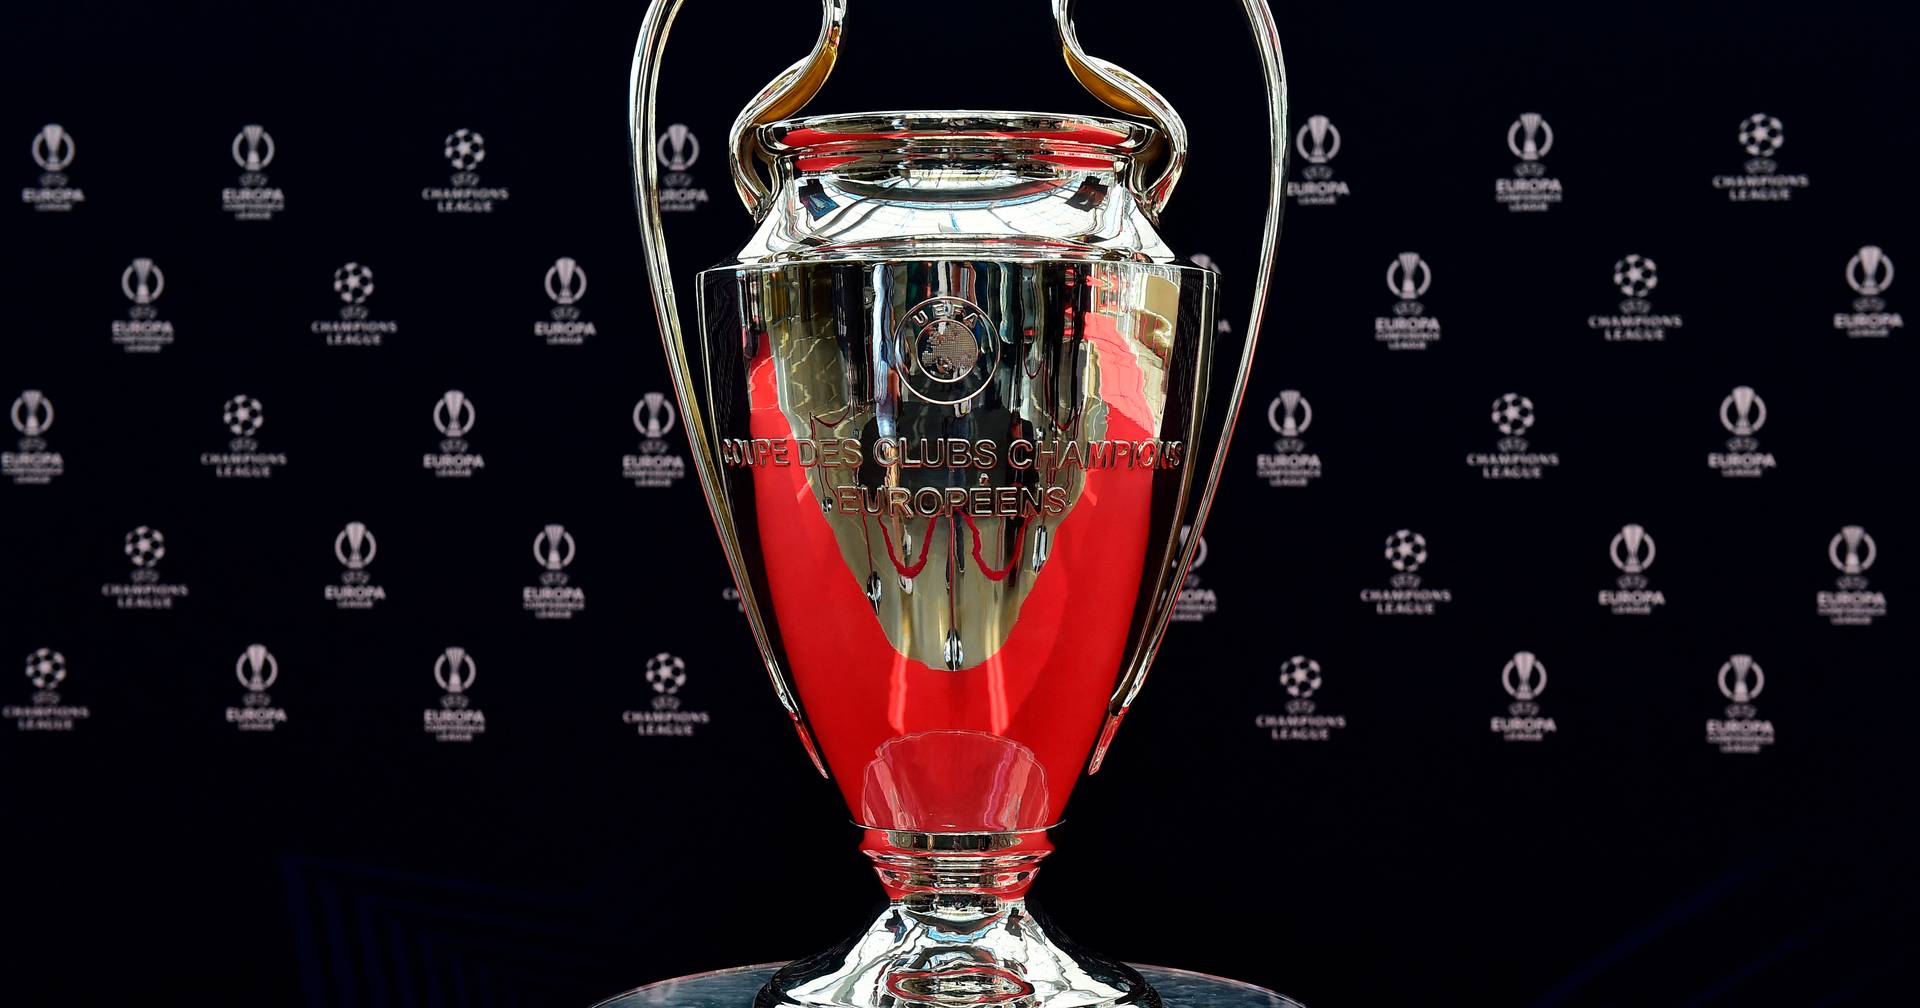 Uefa Champions League, Liga dos Campeões